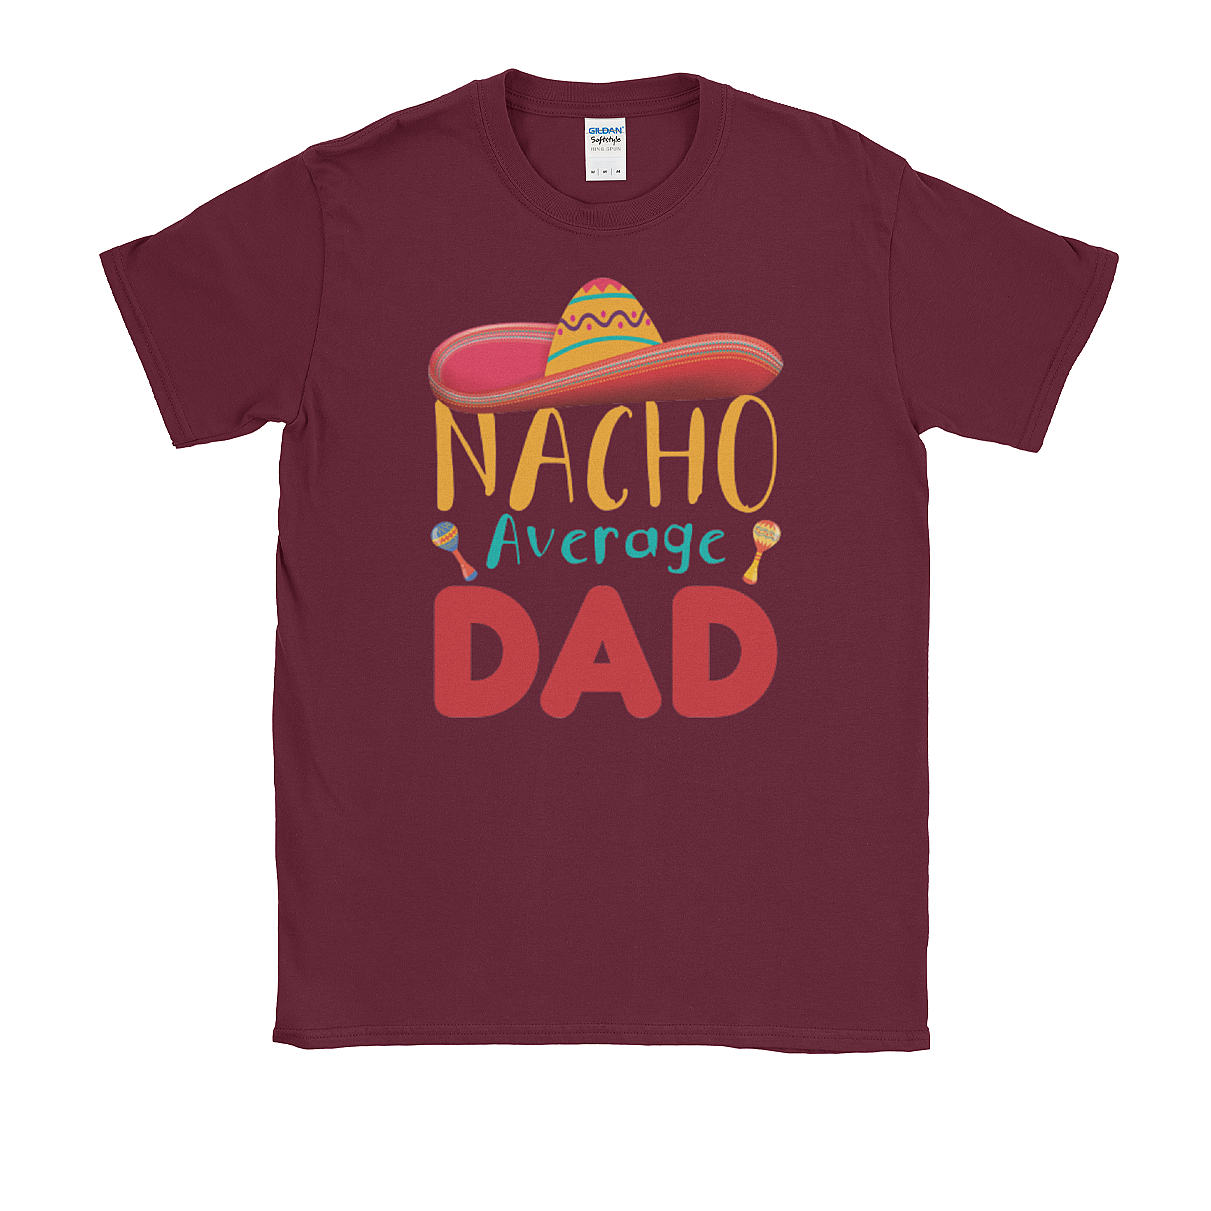 Nacho Average Dad Softstyle Tee